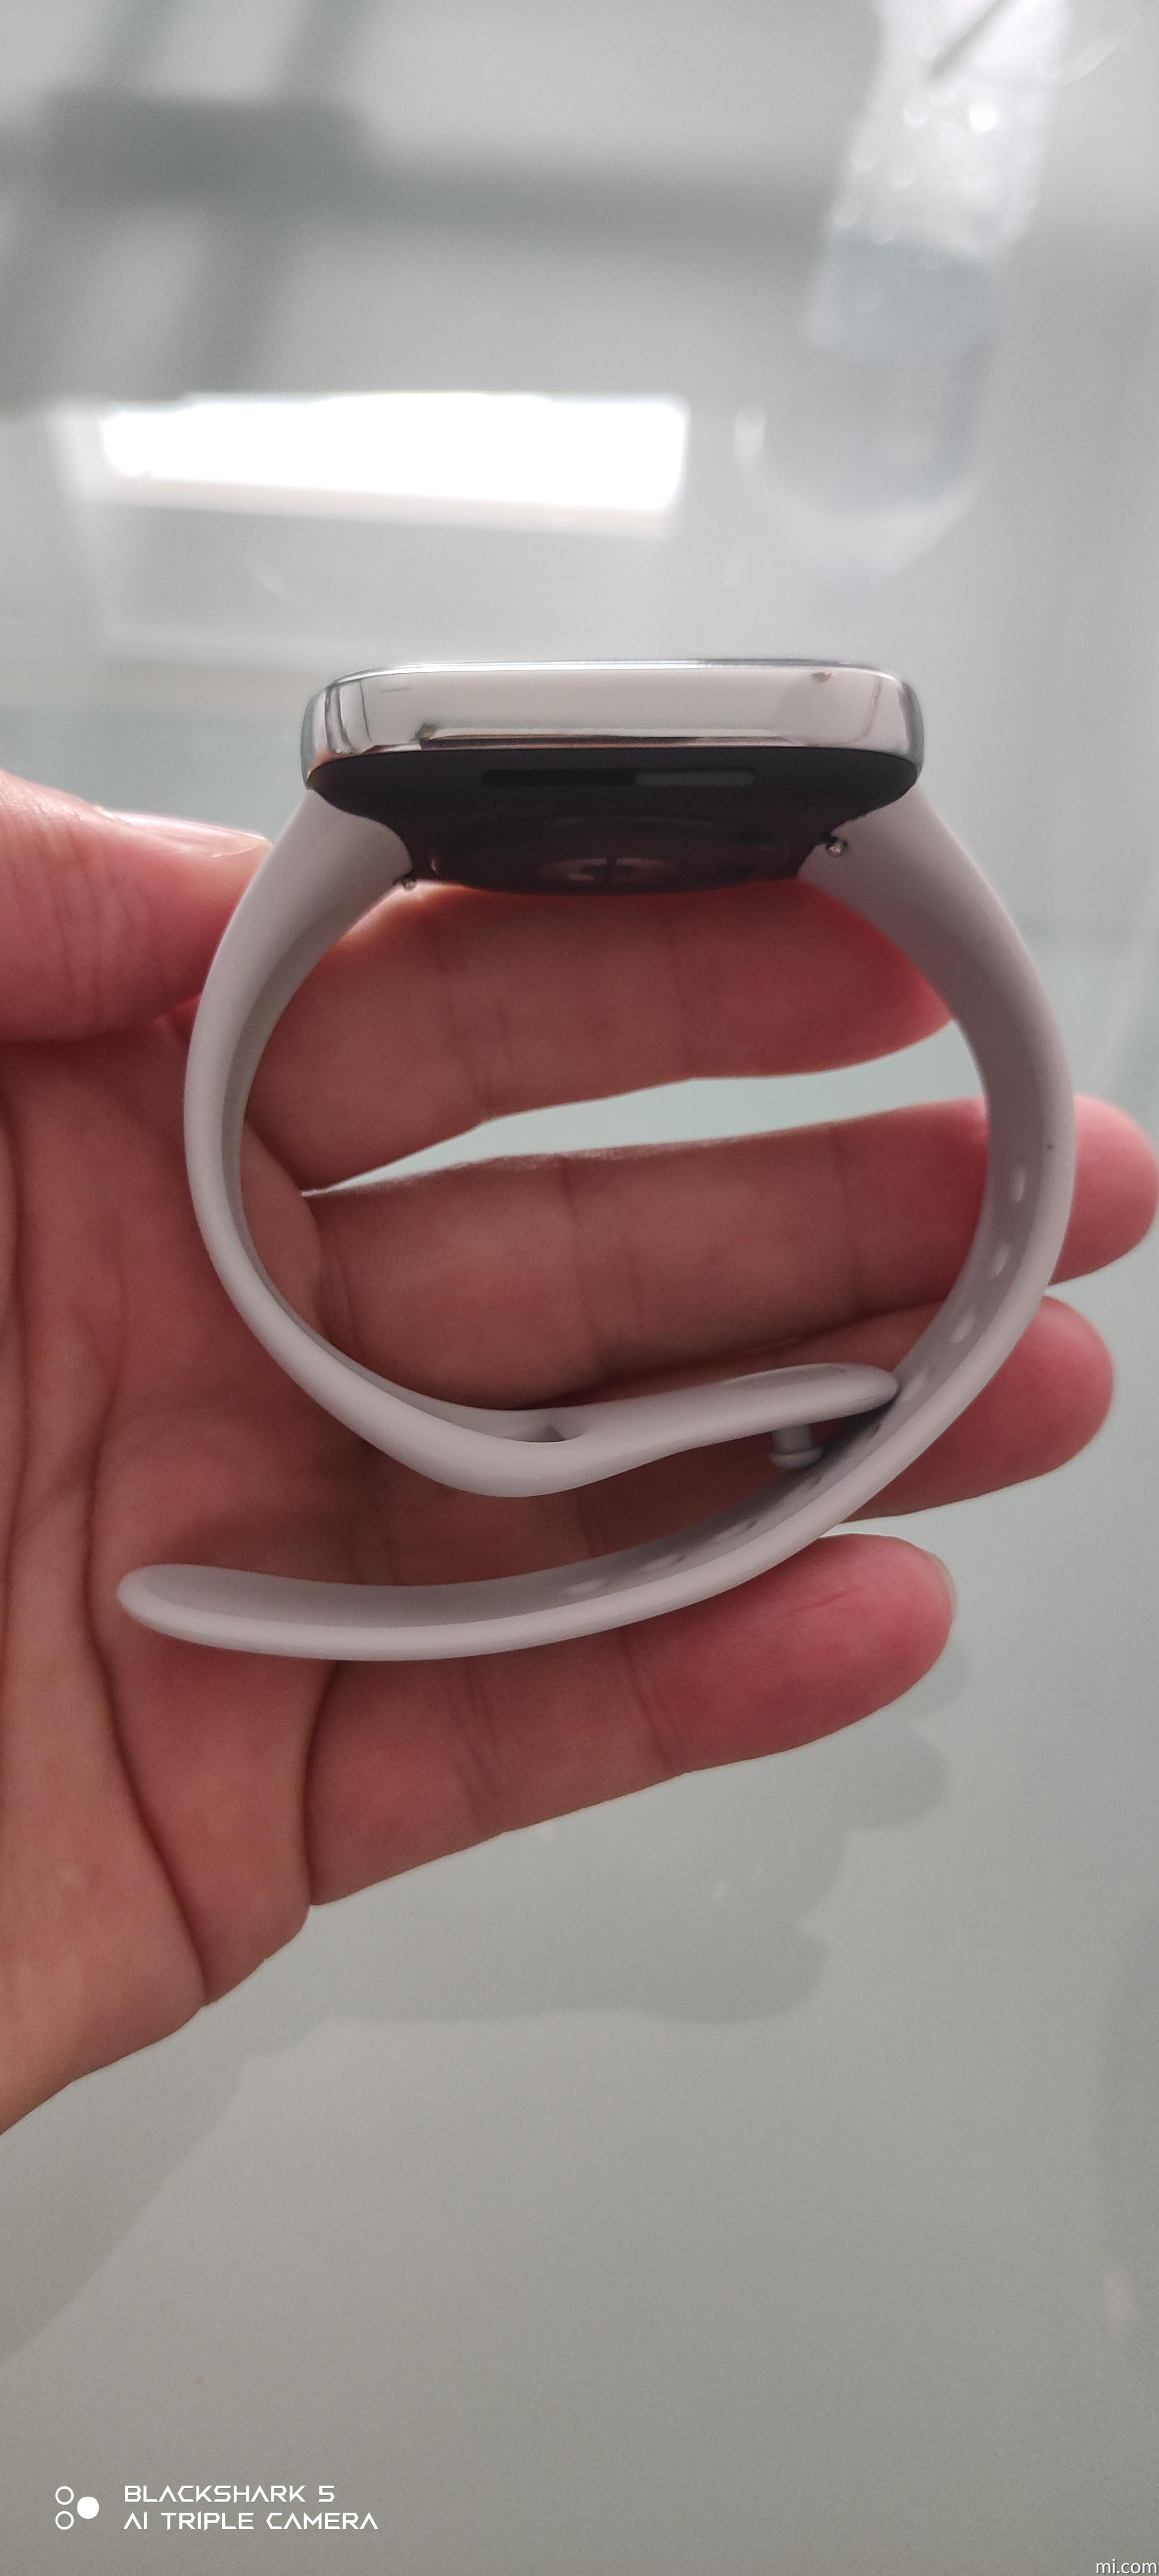 Xiaomi Redmi Watch 3 Blanco - Reloj inteligente